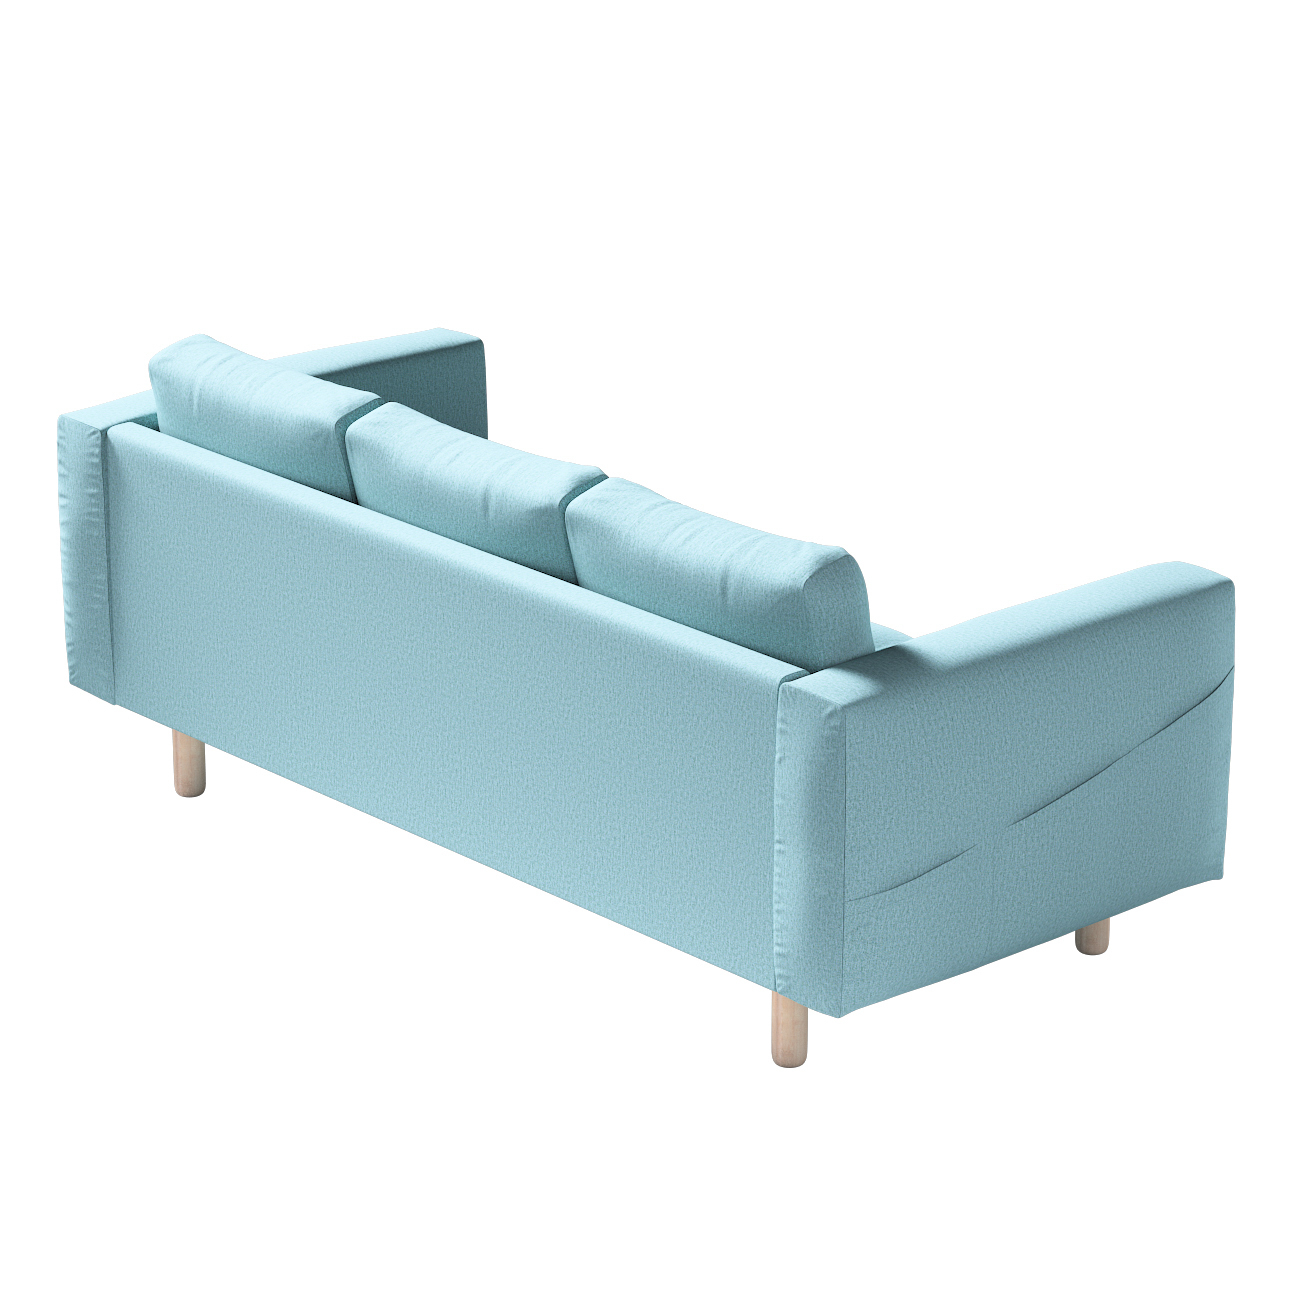 Bezug für Norsborg 3-Sitzer Sofa, blau, Norsborg 3-Sitzer Sofabezug, Madrid günstig online kaufen